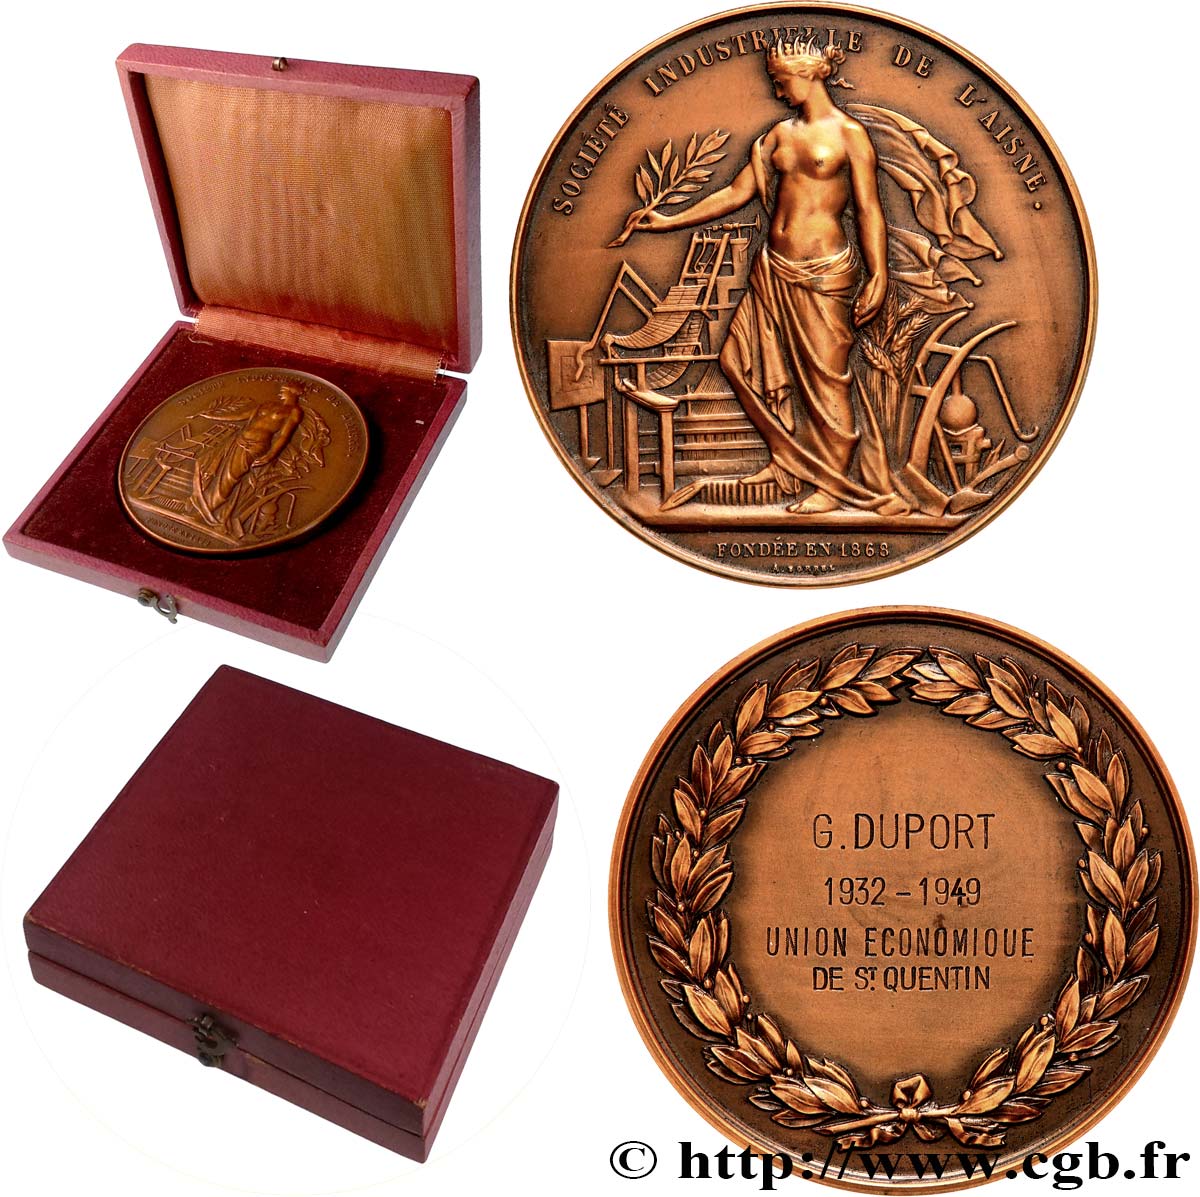 III REPUBLIC Médaille, Société industrielle, Union économique AU